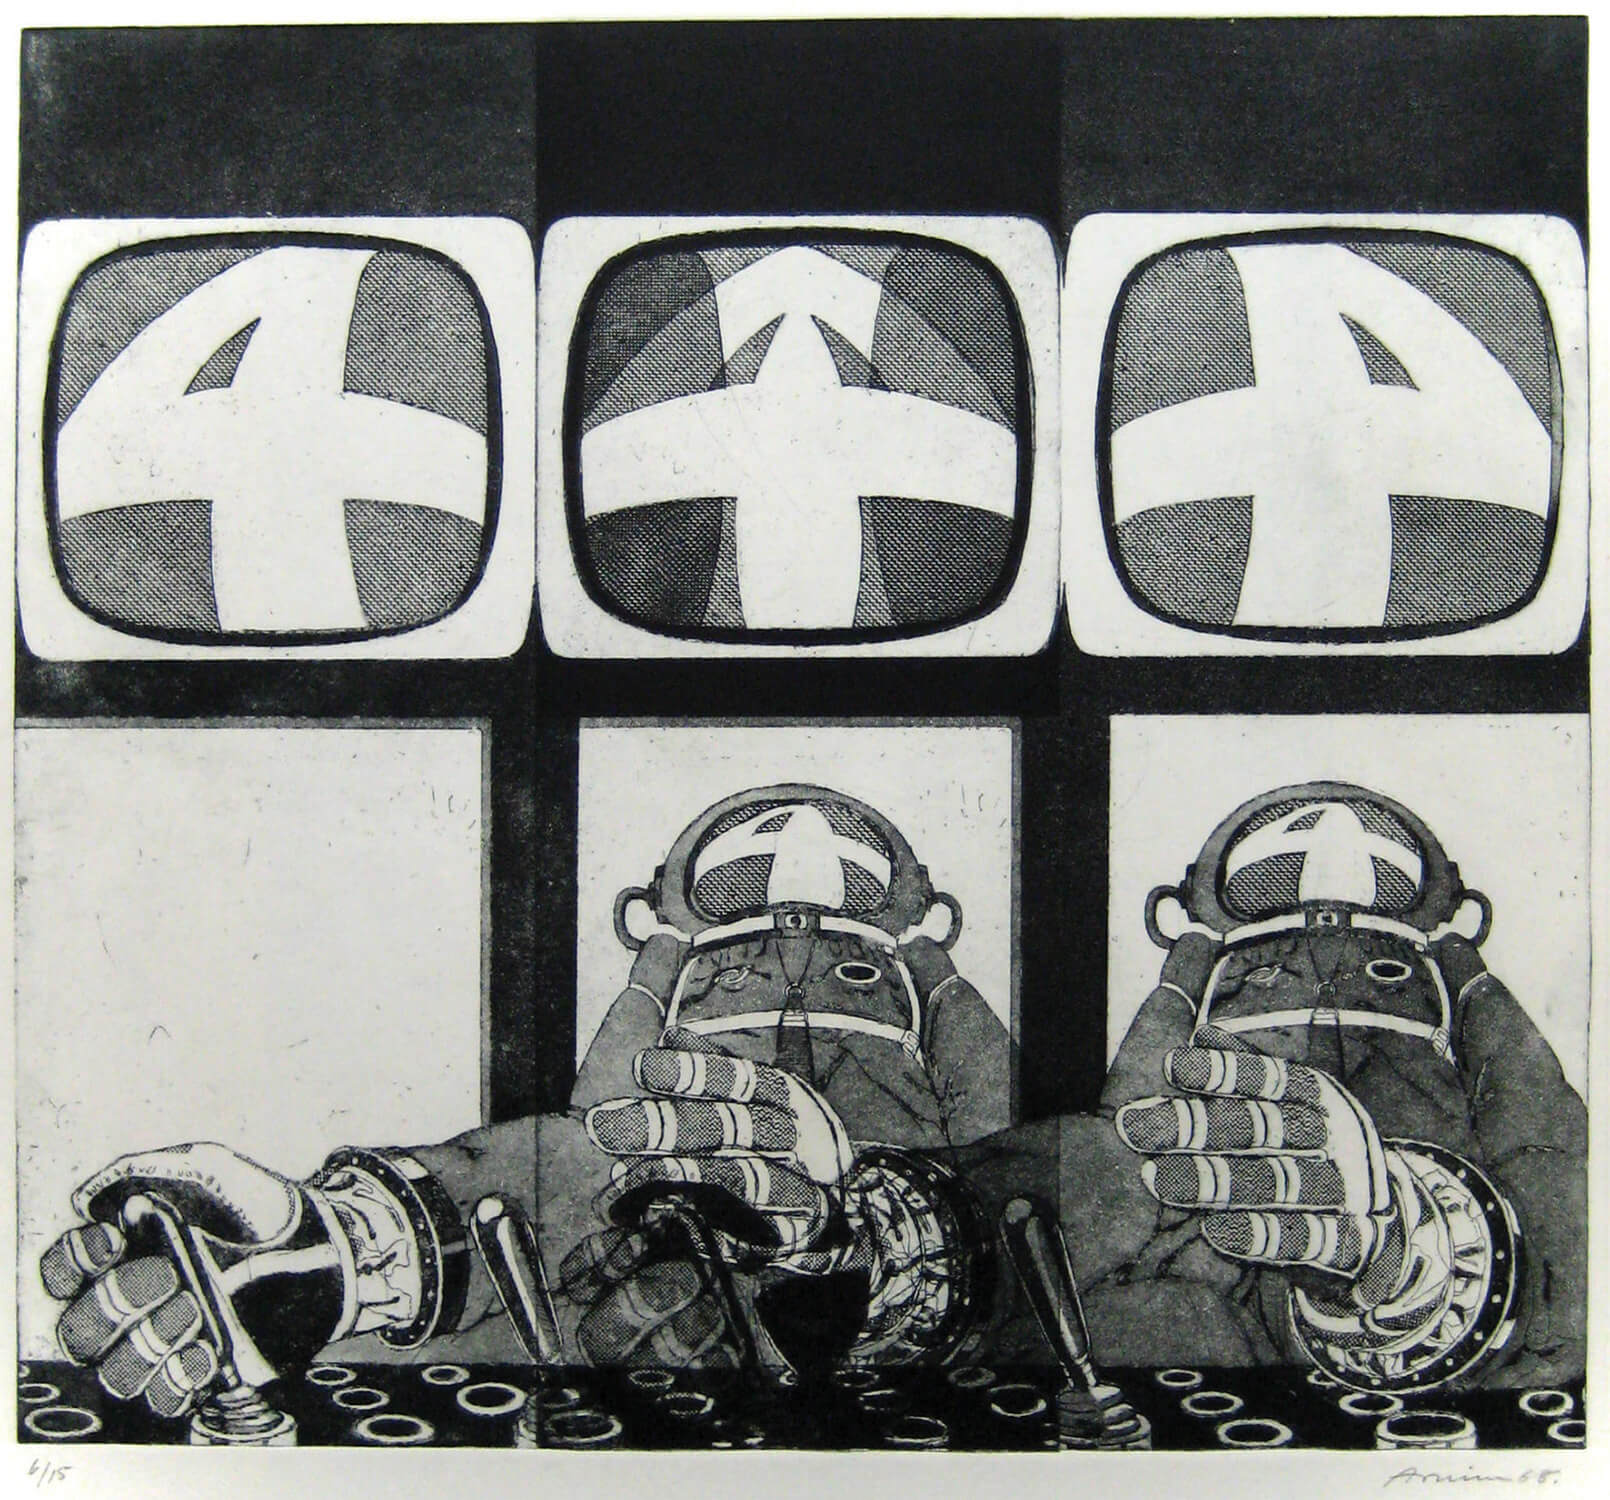 Bettina von Arnim, four, 1968, Radierung, Auflage: 15, 34,5 x 38,5 cm (nur als Mappe mit 5 Radierungen)